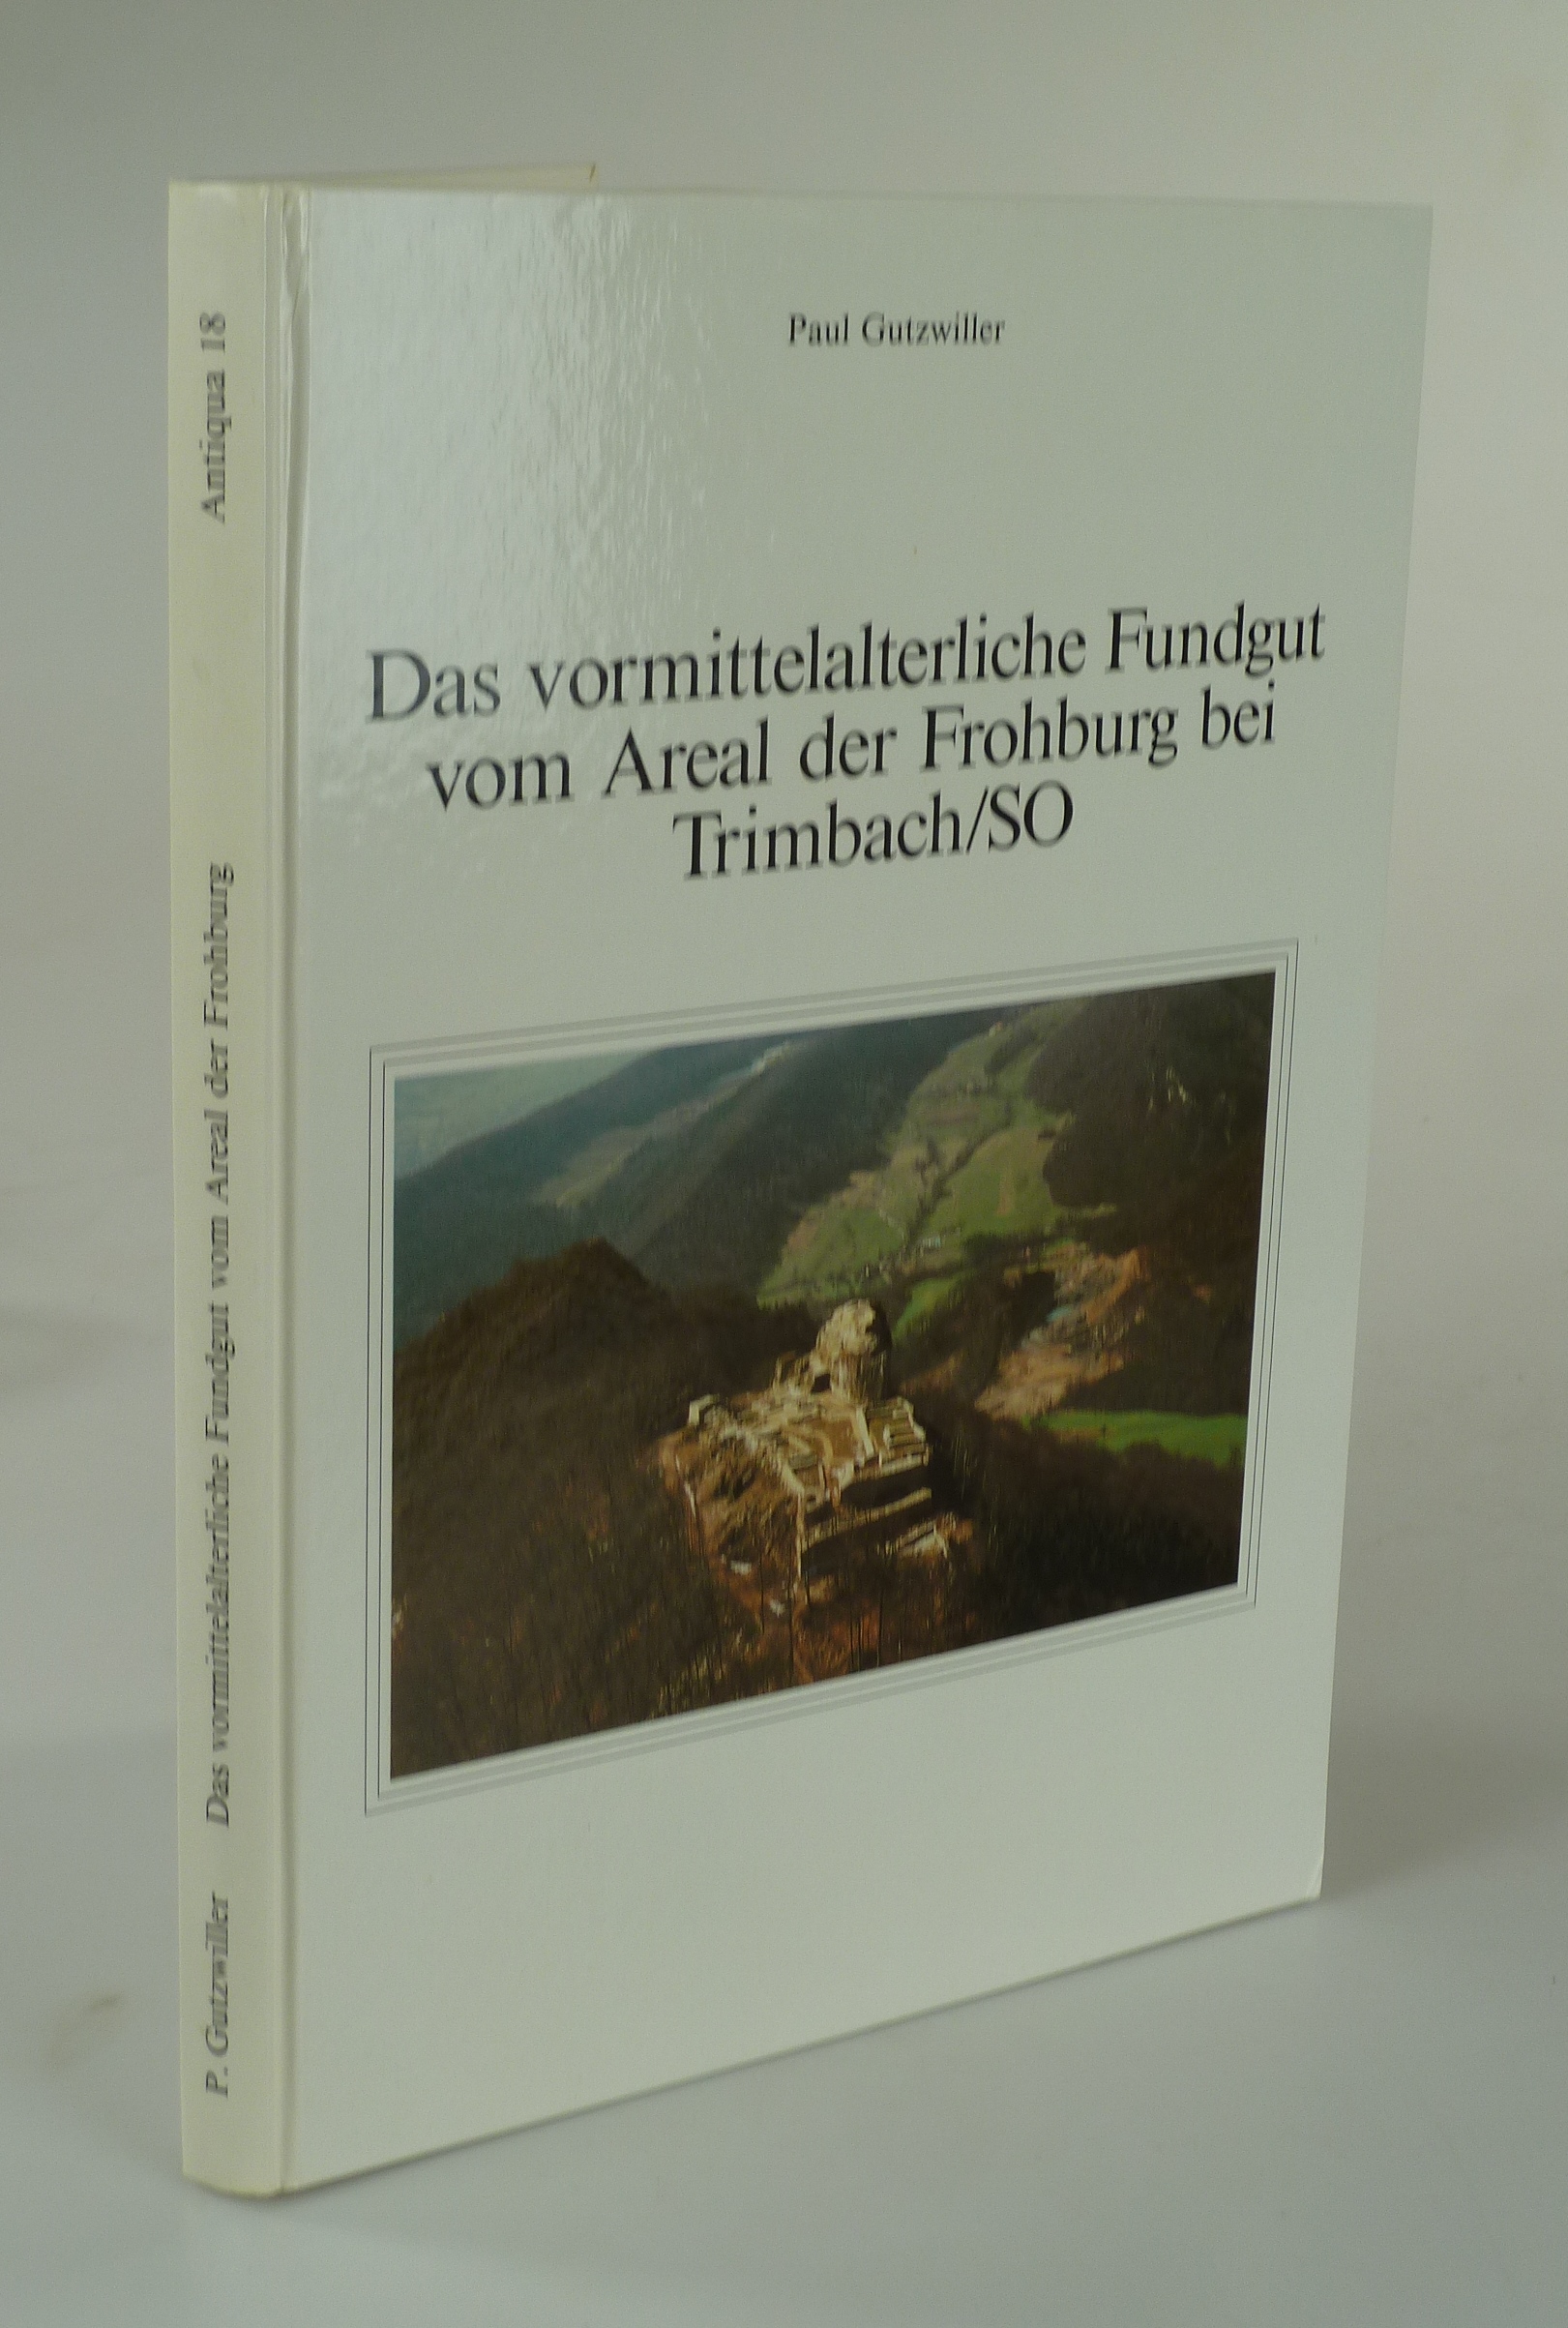 Das vormittelalterliche Fundgut vom Areal der Frohburg bei Trimbach/SO. - GUTZWILLER, Paul.